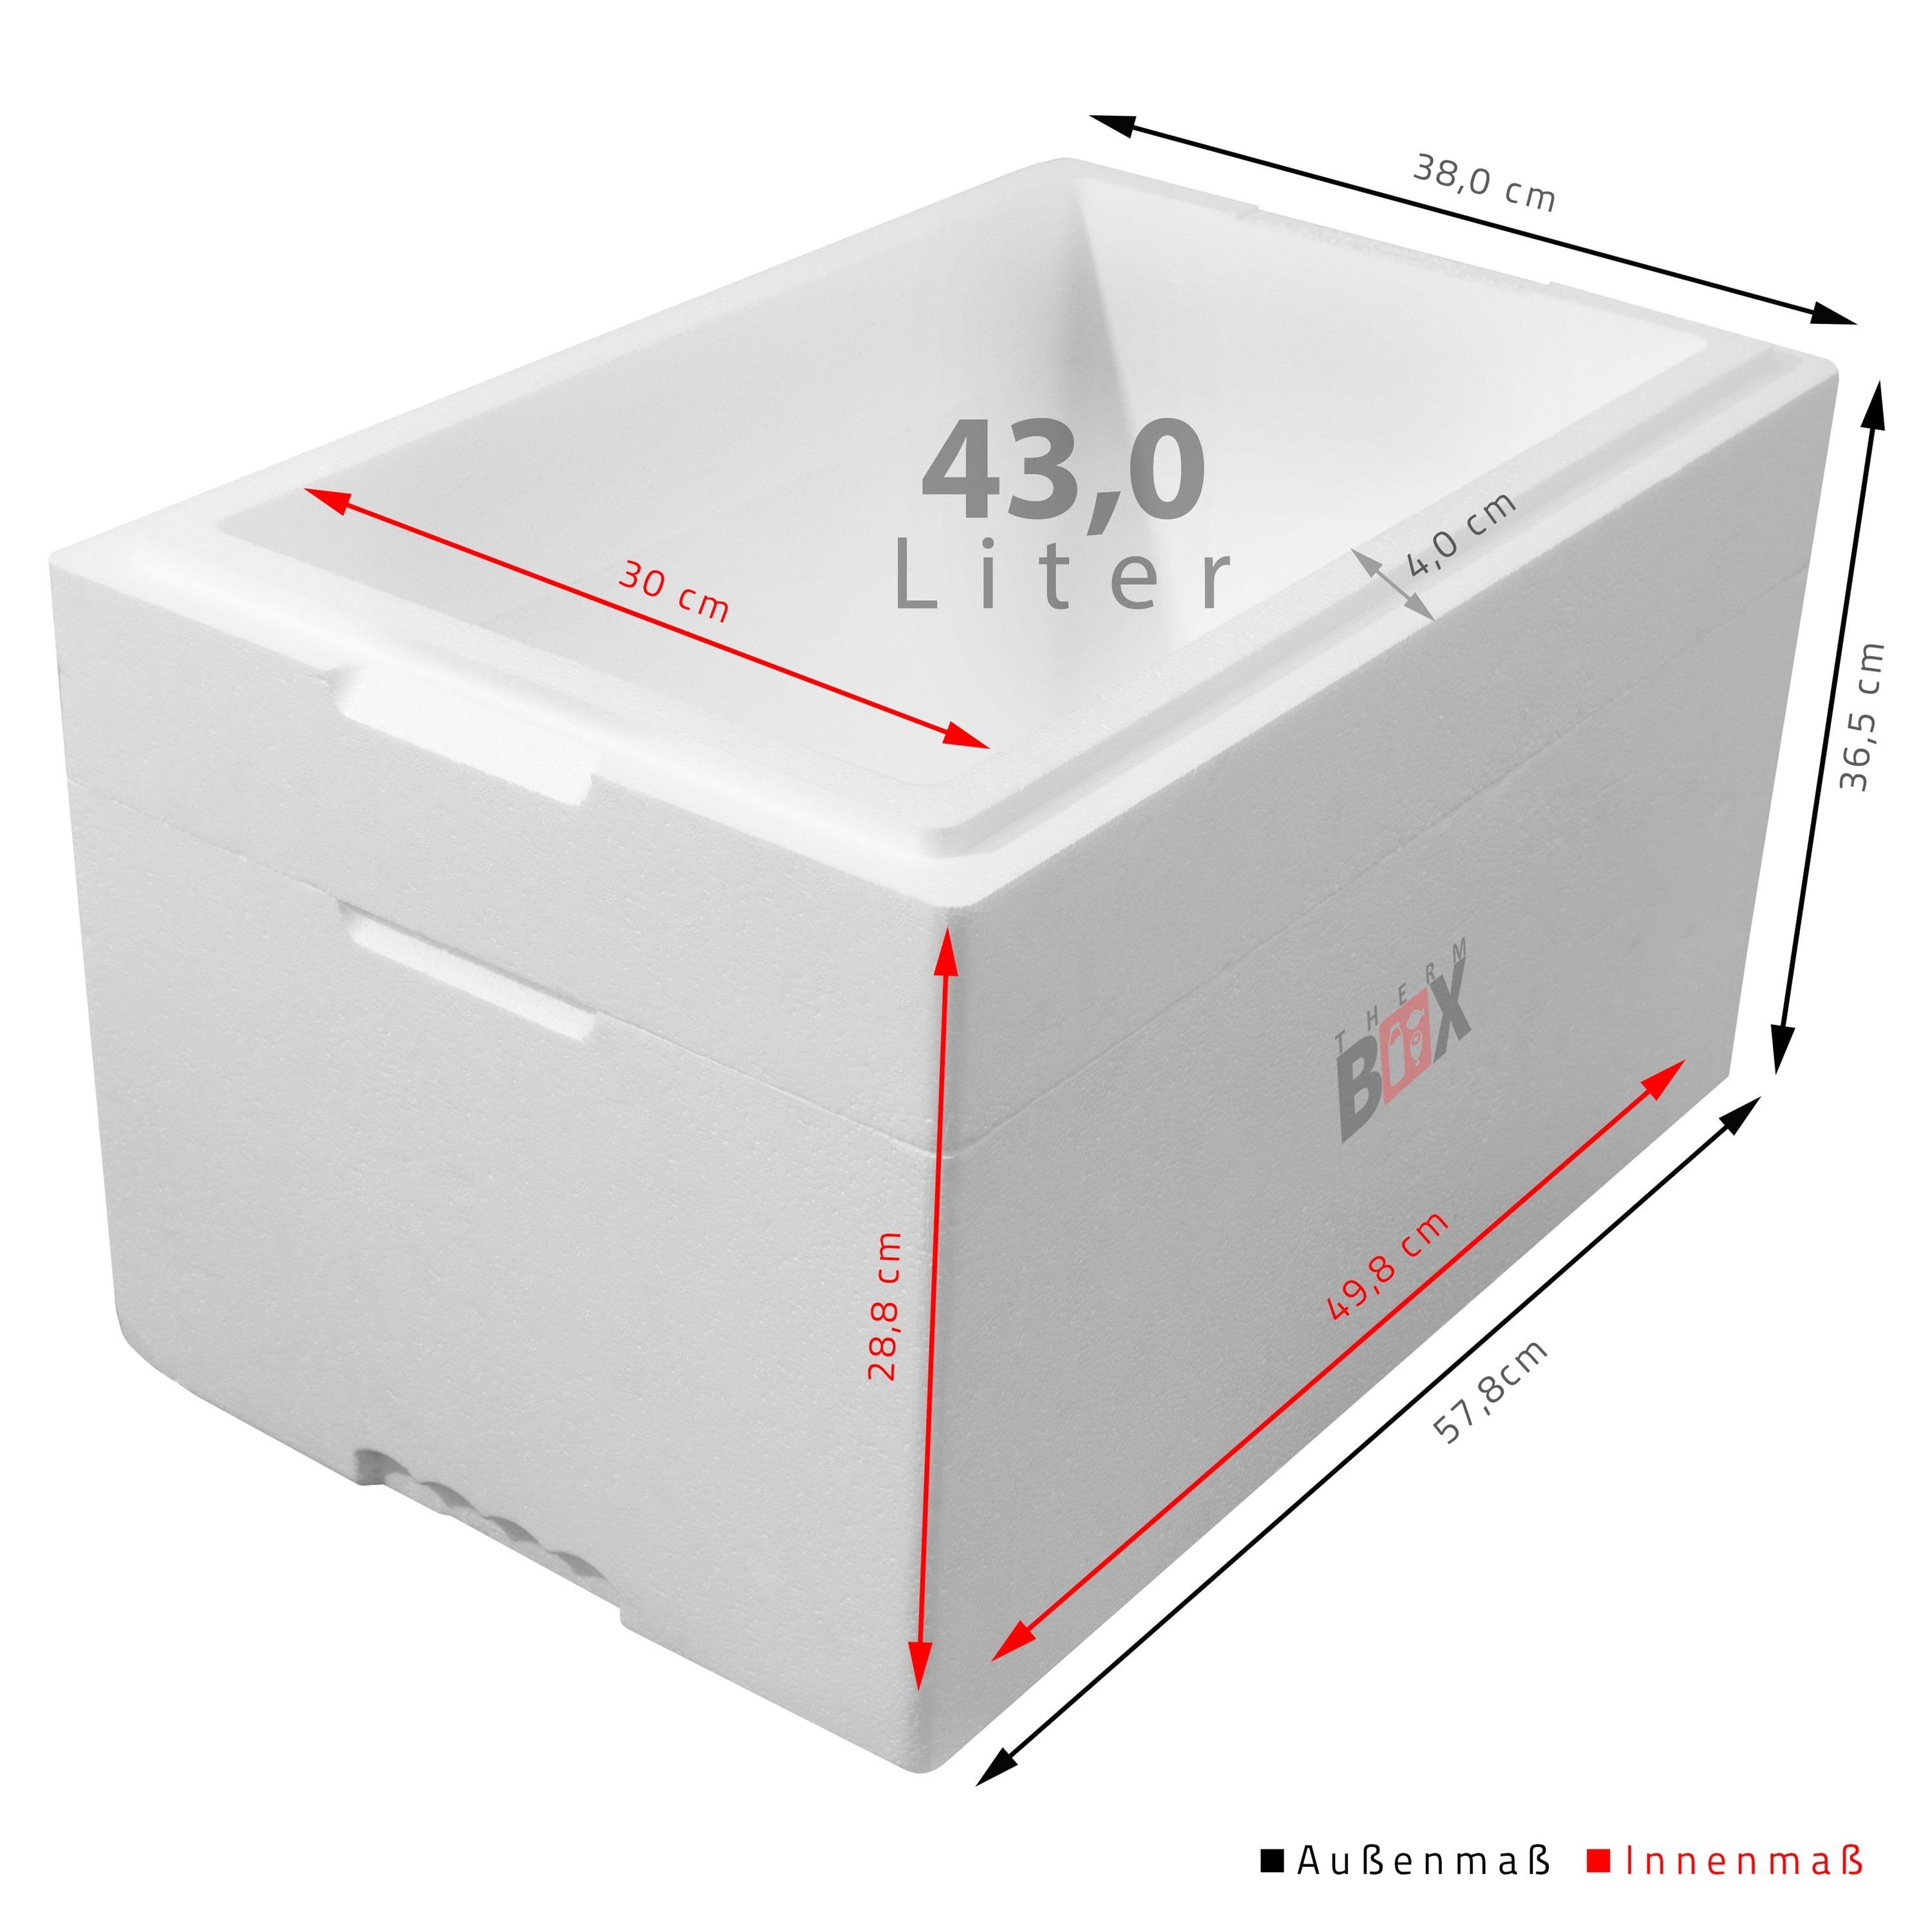 Innenmaß:49x30x28cm Kühlbox Wiederverwendbar, THERM-BOX mit Karton), Thermobehälter im 43M (0-tlg., Modularbox cm 43L Thermobox 4,0 Zusatzring Styropor-Verdichtet, Deckel & Erweiterbar Box Wand: Warmhaltebox Isolierbox